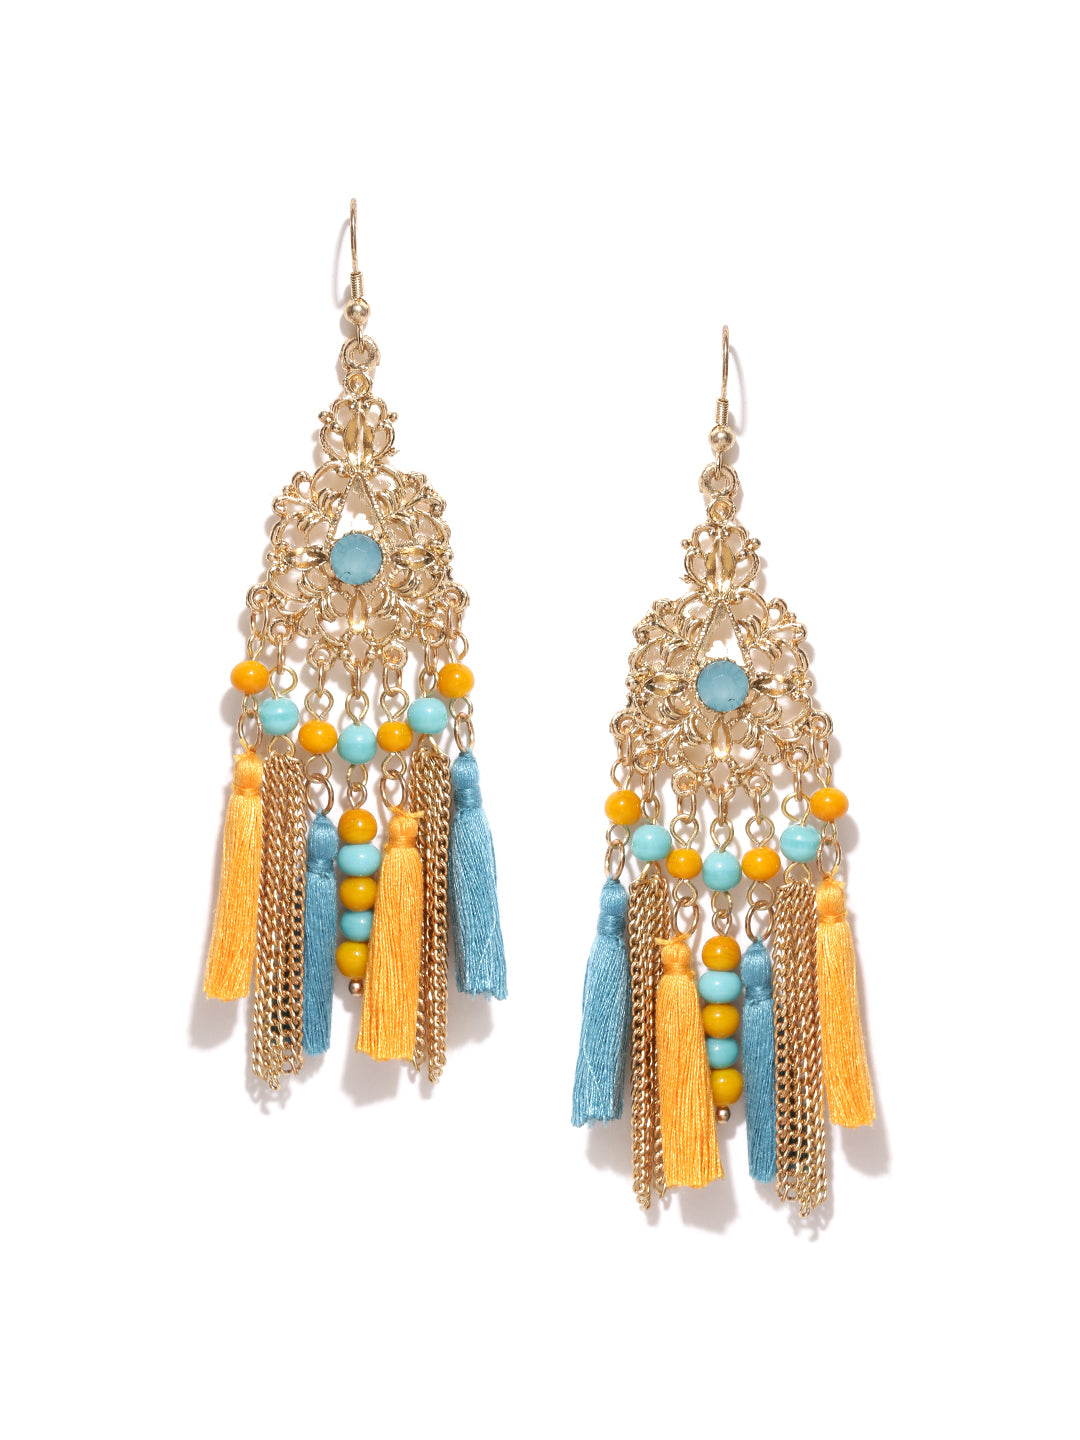 Buy The Swirl-n-Diamond Gold Drop Earrings Online from Vaibhav Jewellers